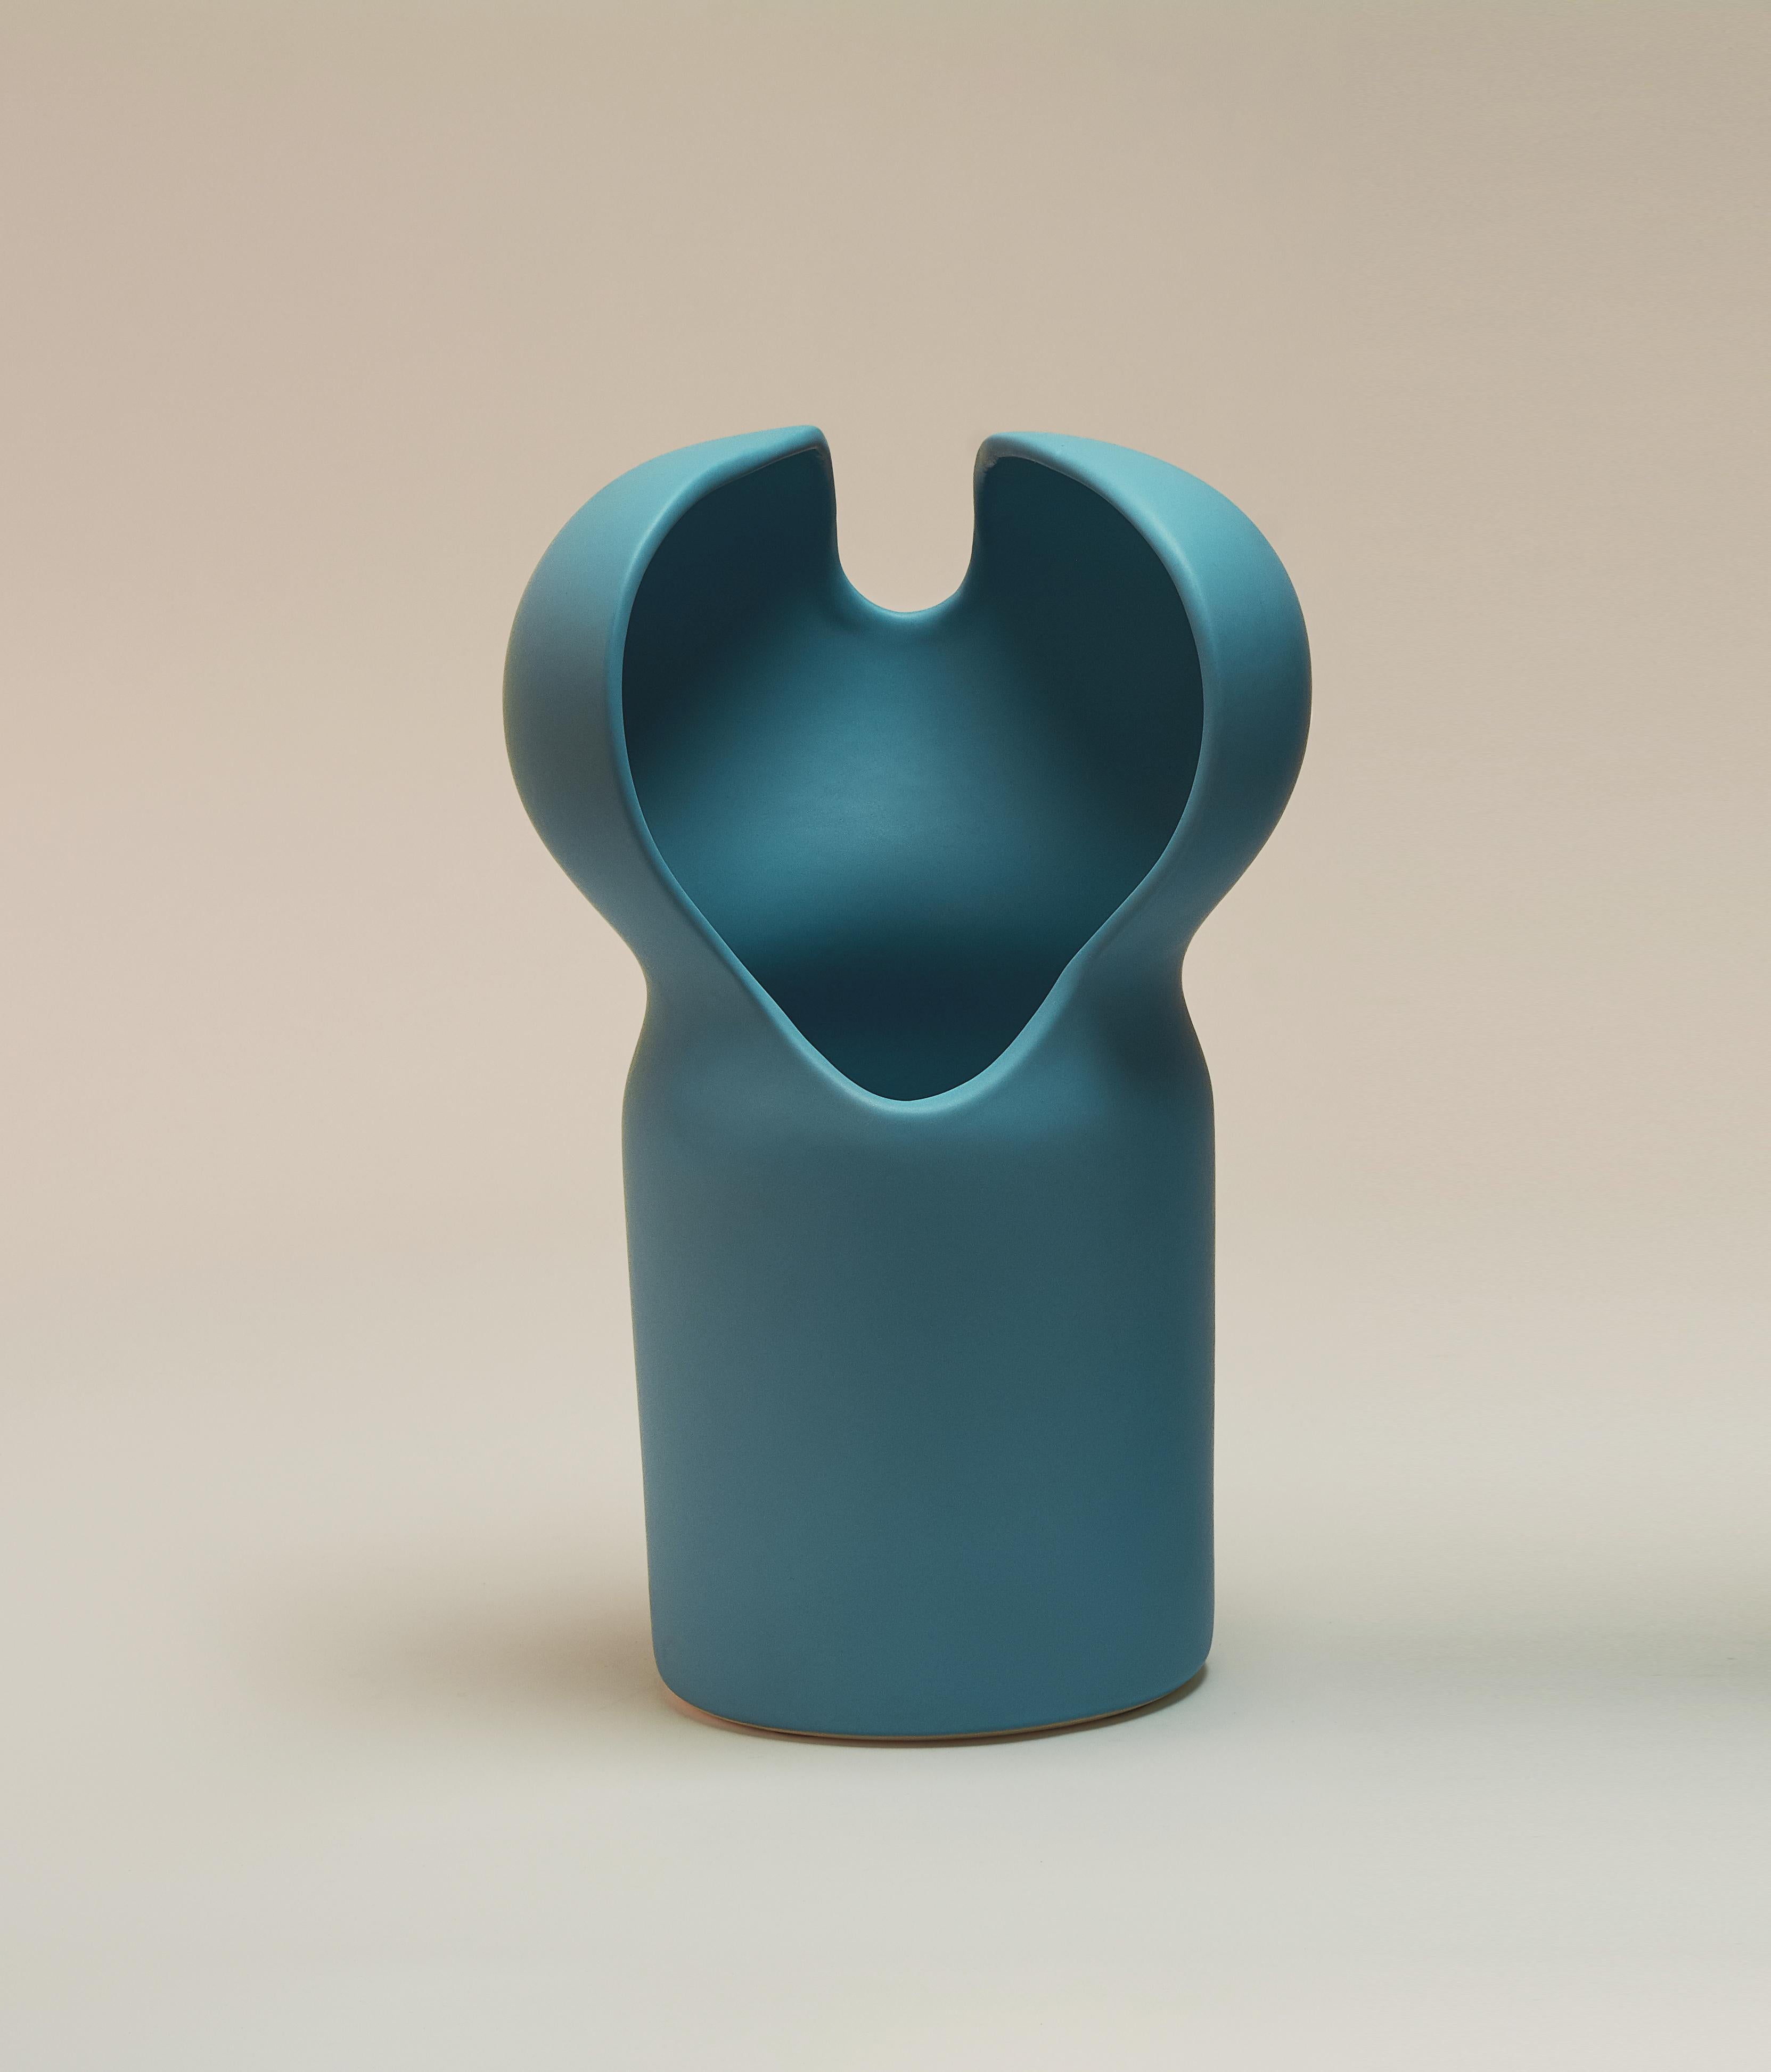 Floro-Vase von Lilia Cruz Corona Garduño
Abmessungen: B 18 x T 18 x H 31 cm
MATERIALIEN: Hochtemperatur-Keramik (Steinzeug) und keramische Glasur

Das Studio Platalea ist aus einer Leidenschaft für Kunst und Design entstanden. Wir finden es toll,